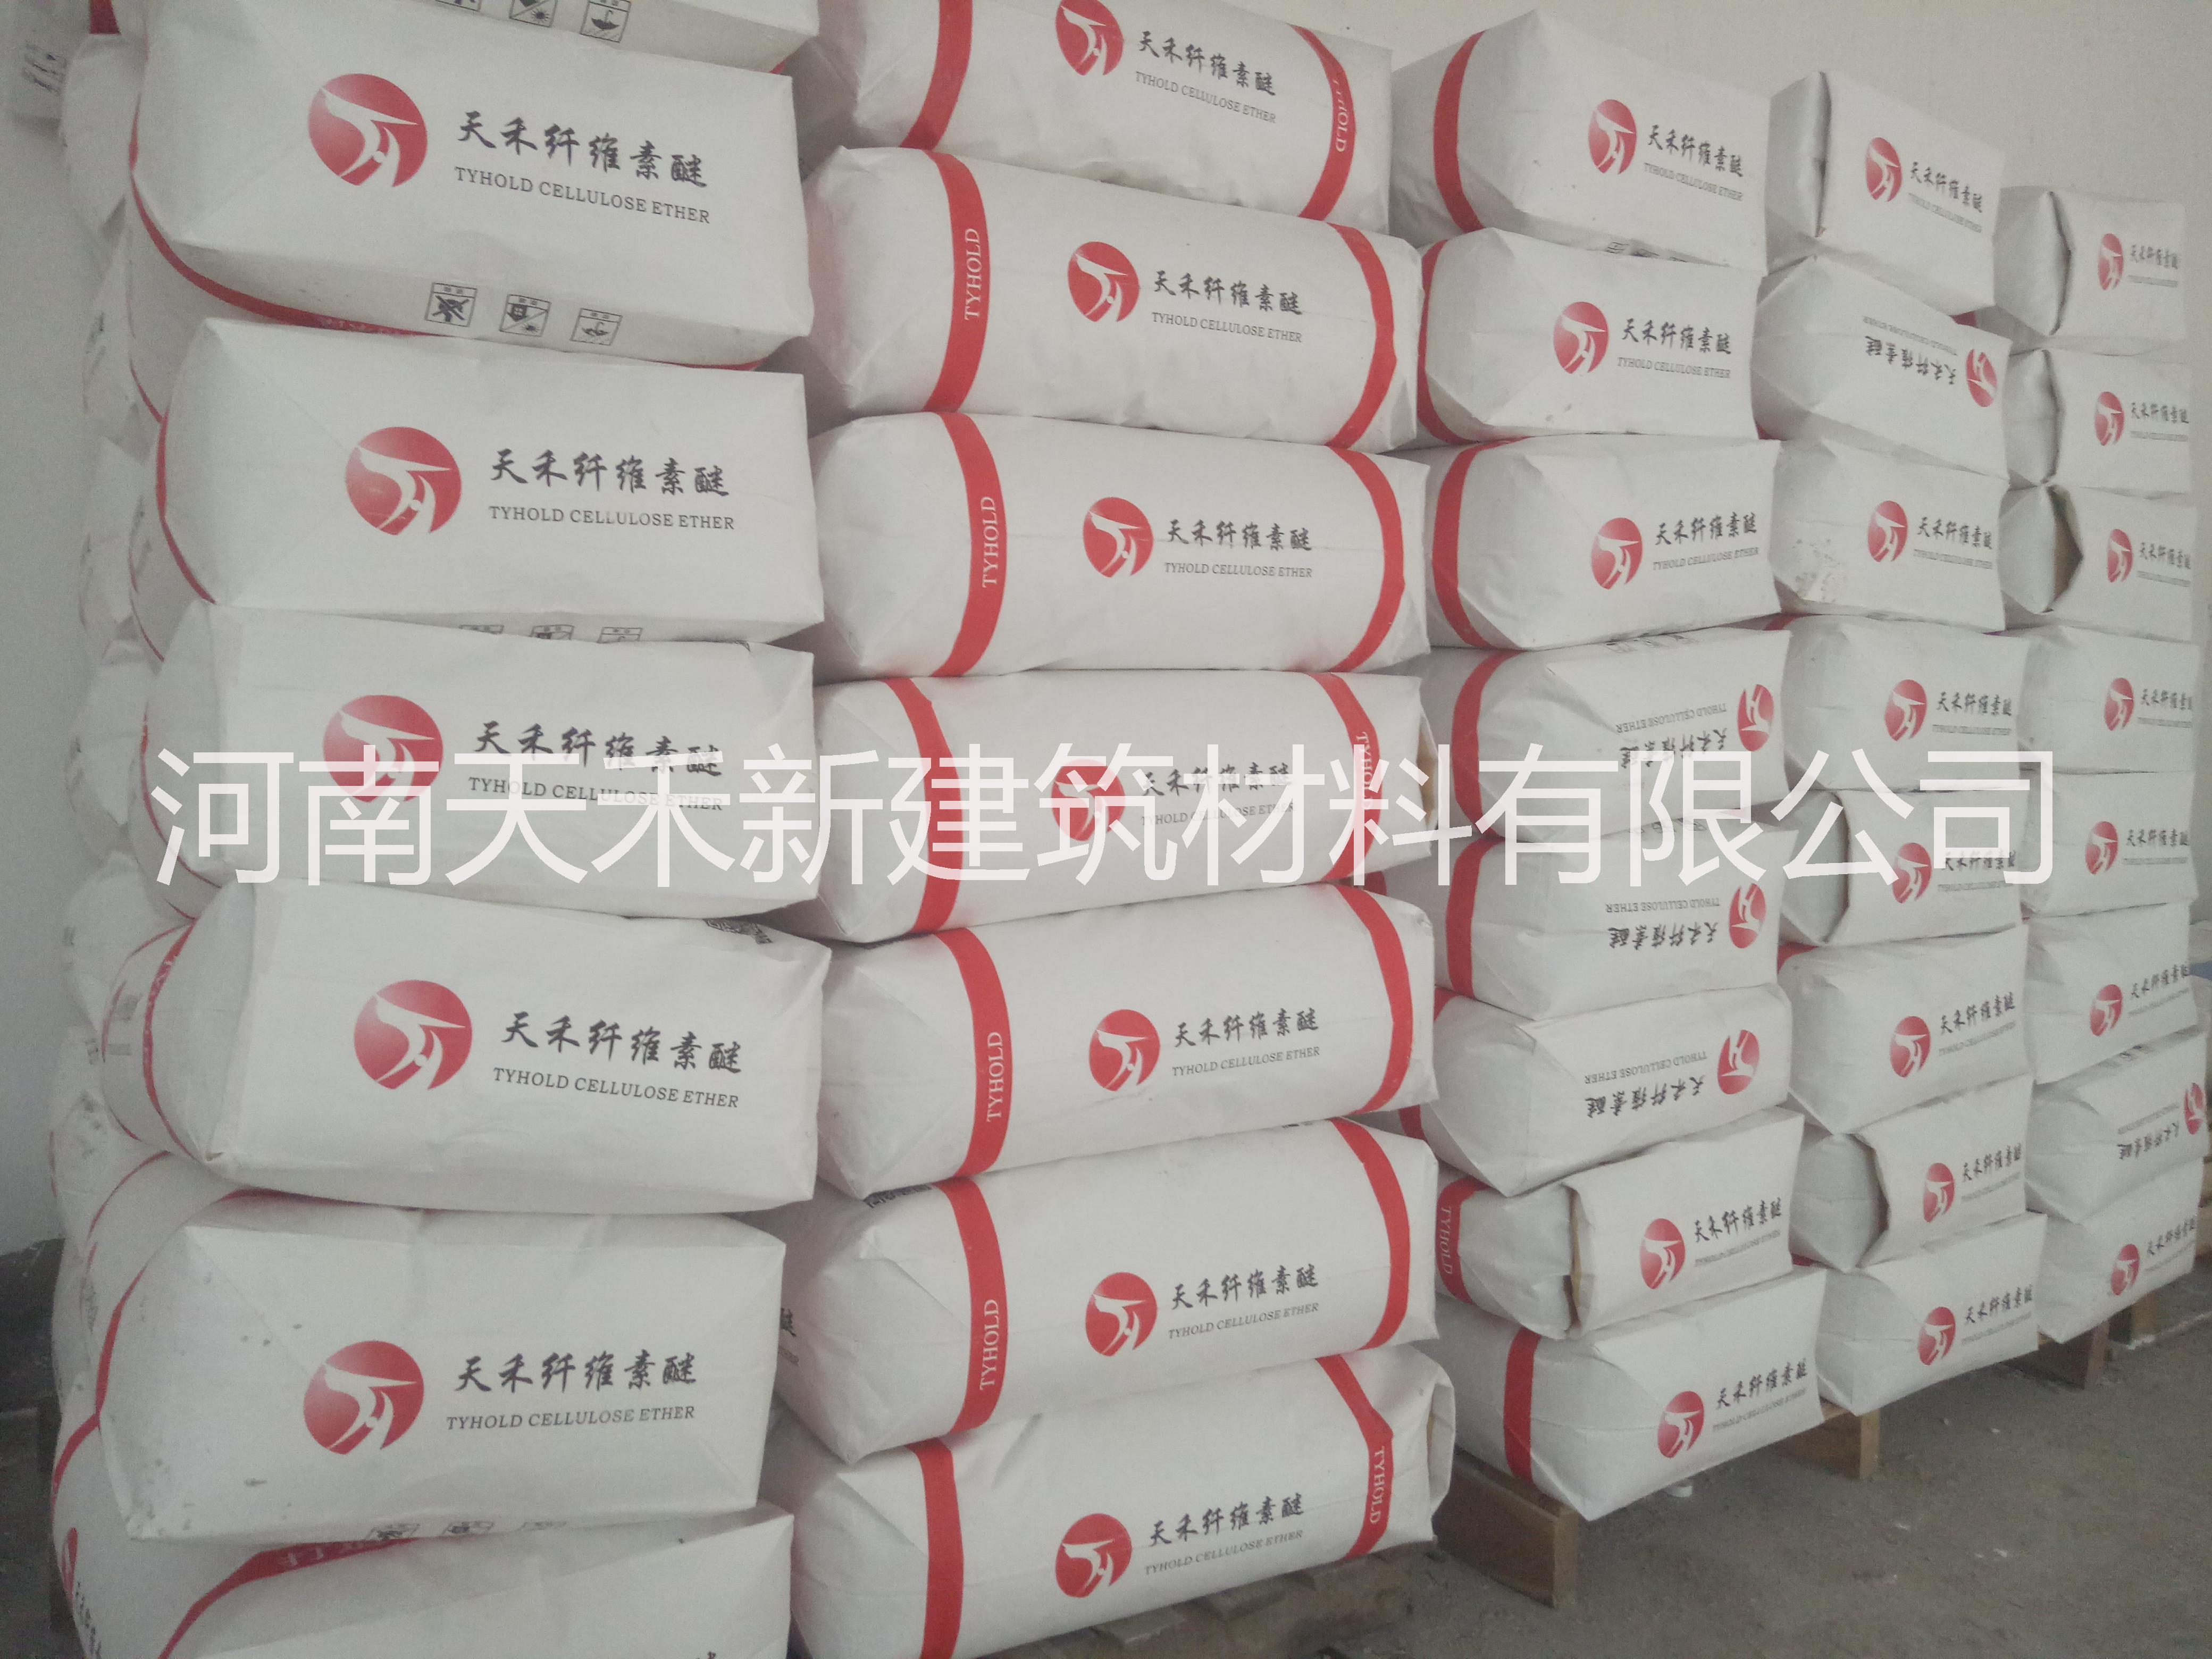 郑州市专业生产乳胶粉厂家河南专业生产乳胶粉厂家大量批发出售底价订购热线号码